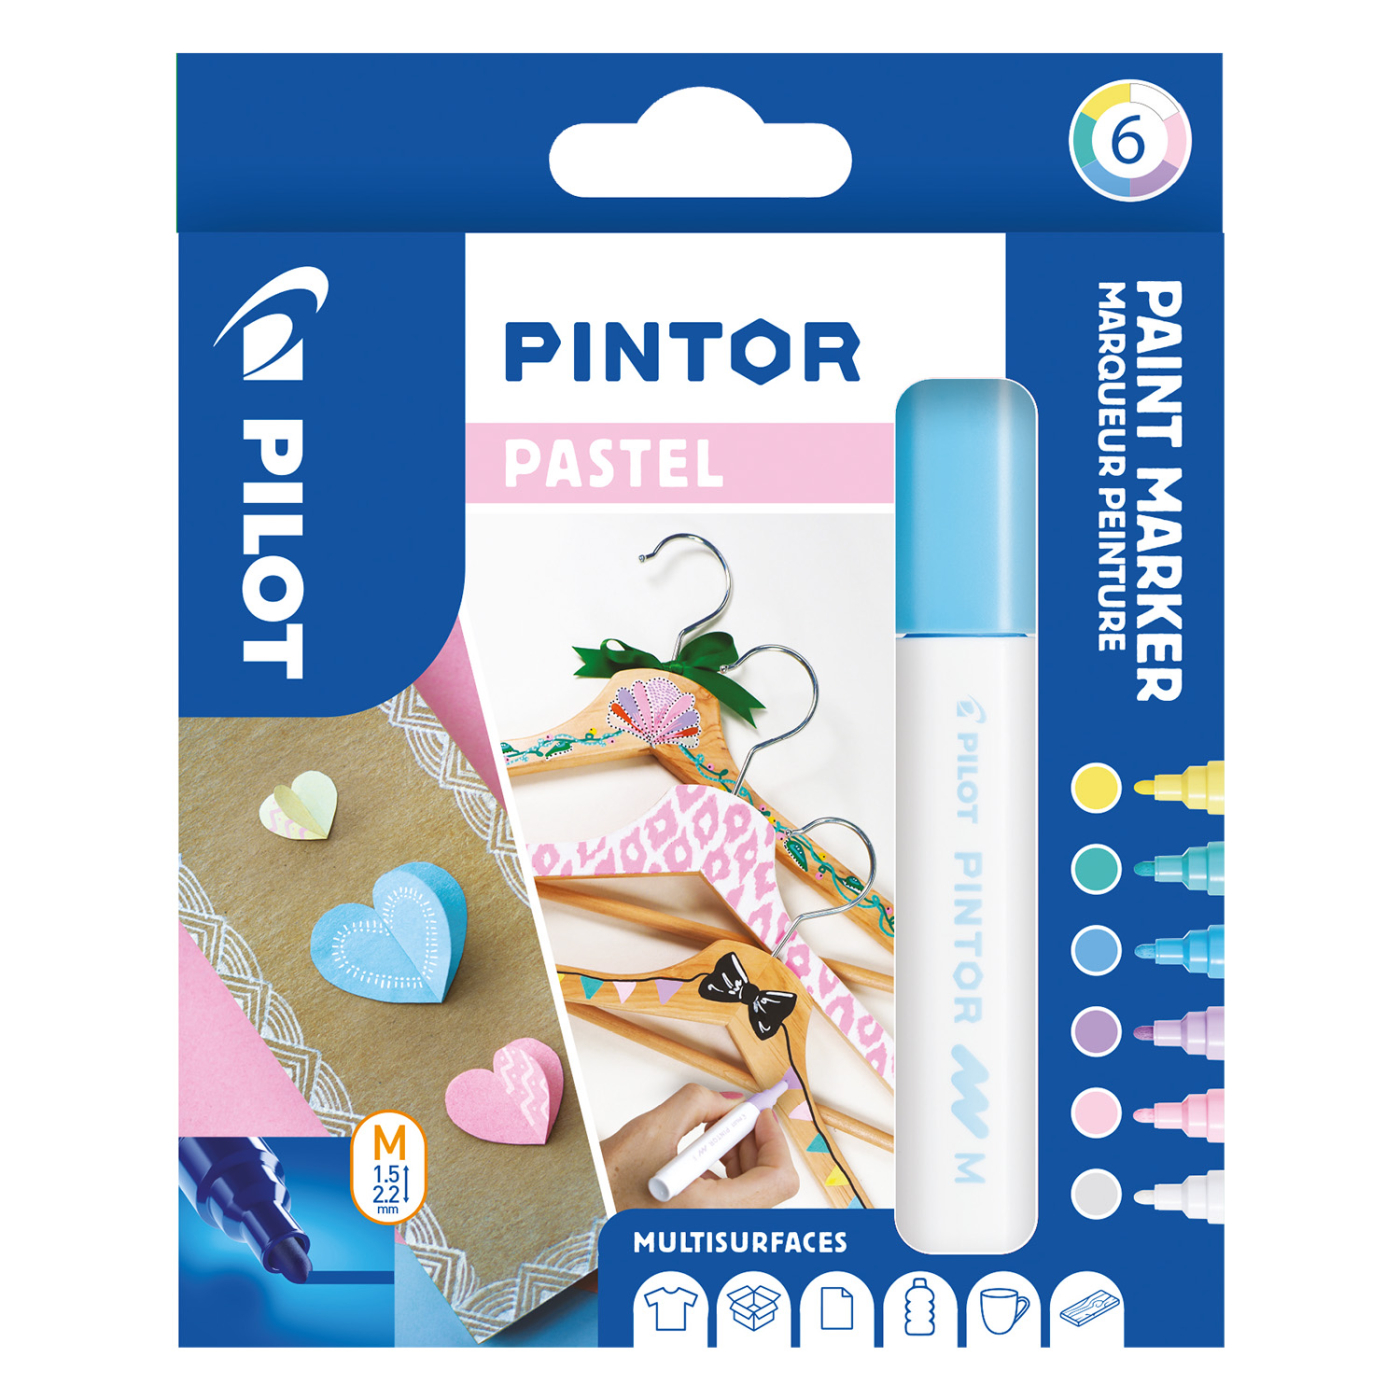 Pintor Medium 6-pack Pastell i gruppen Pennor / Konstnärspennor / Illustrationsmarkers hos Pen Store (109493)